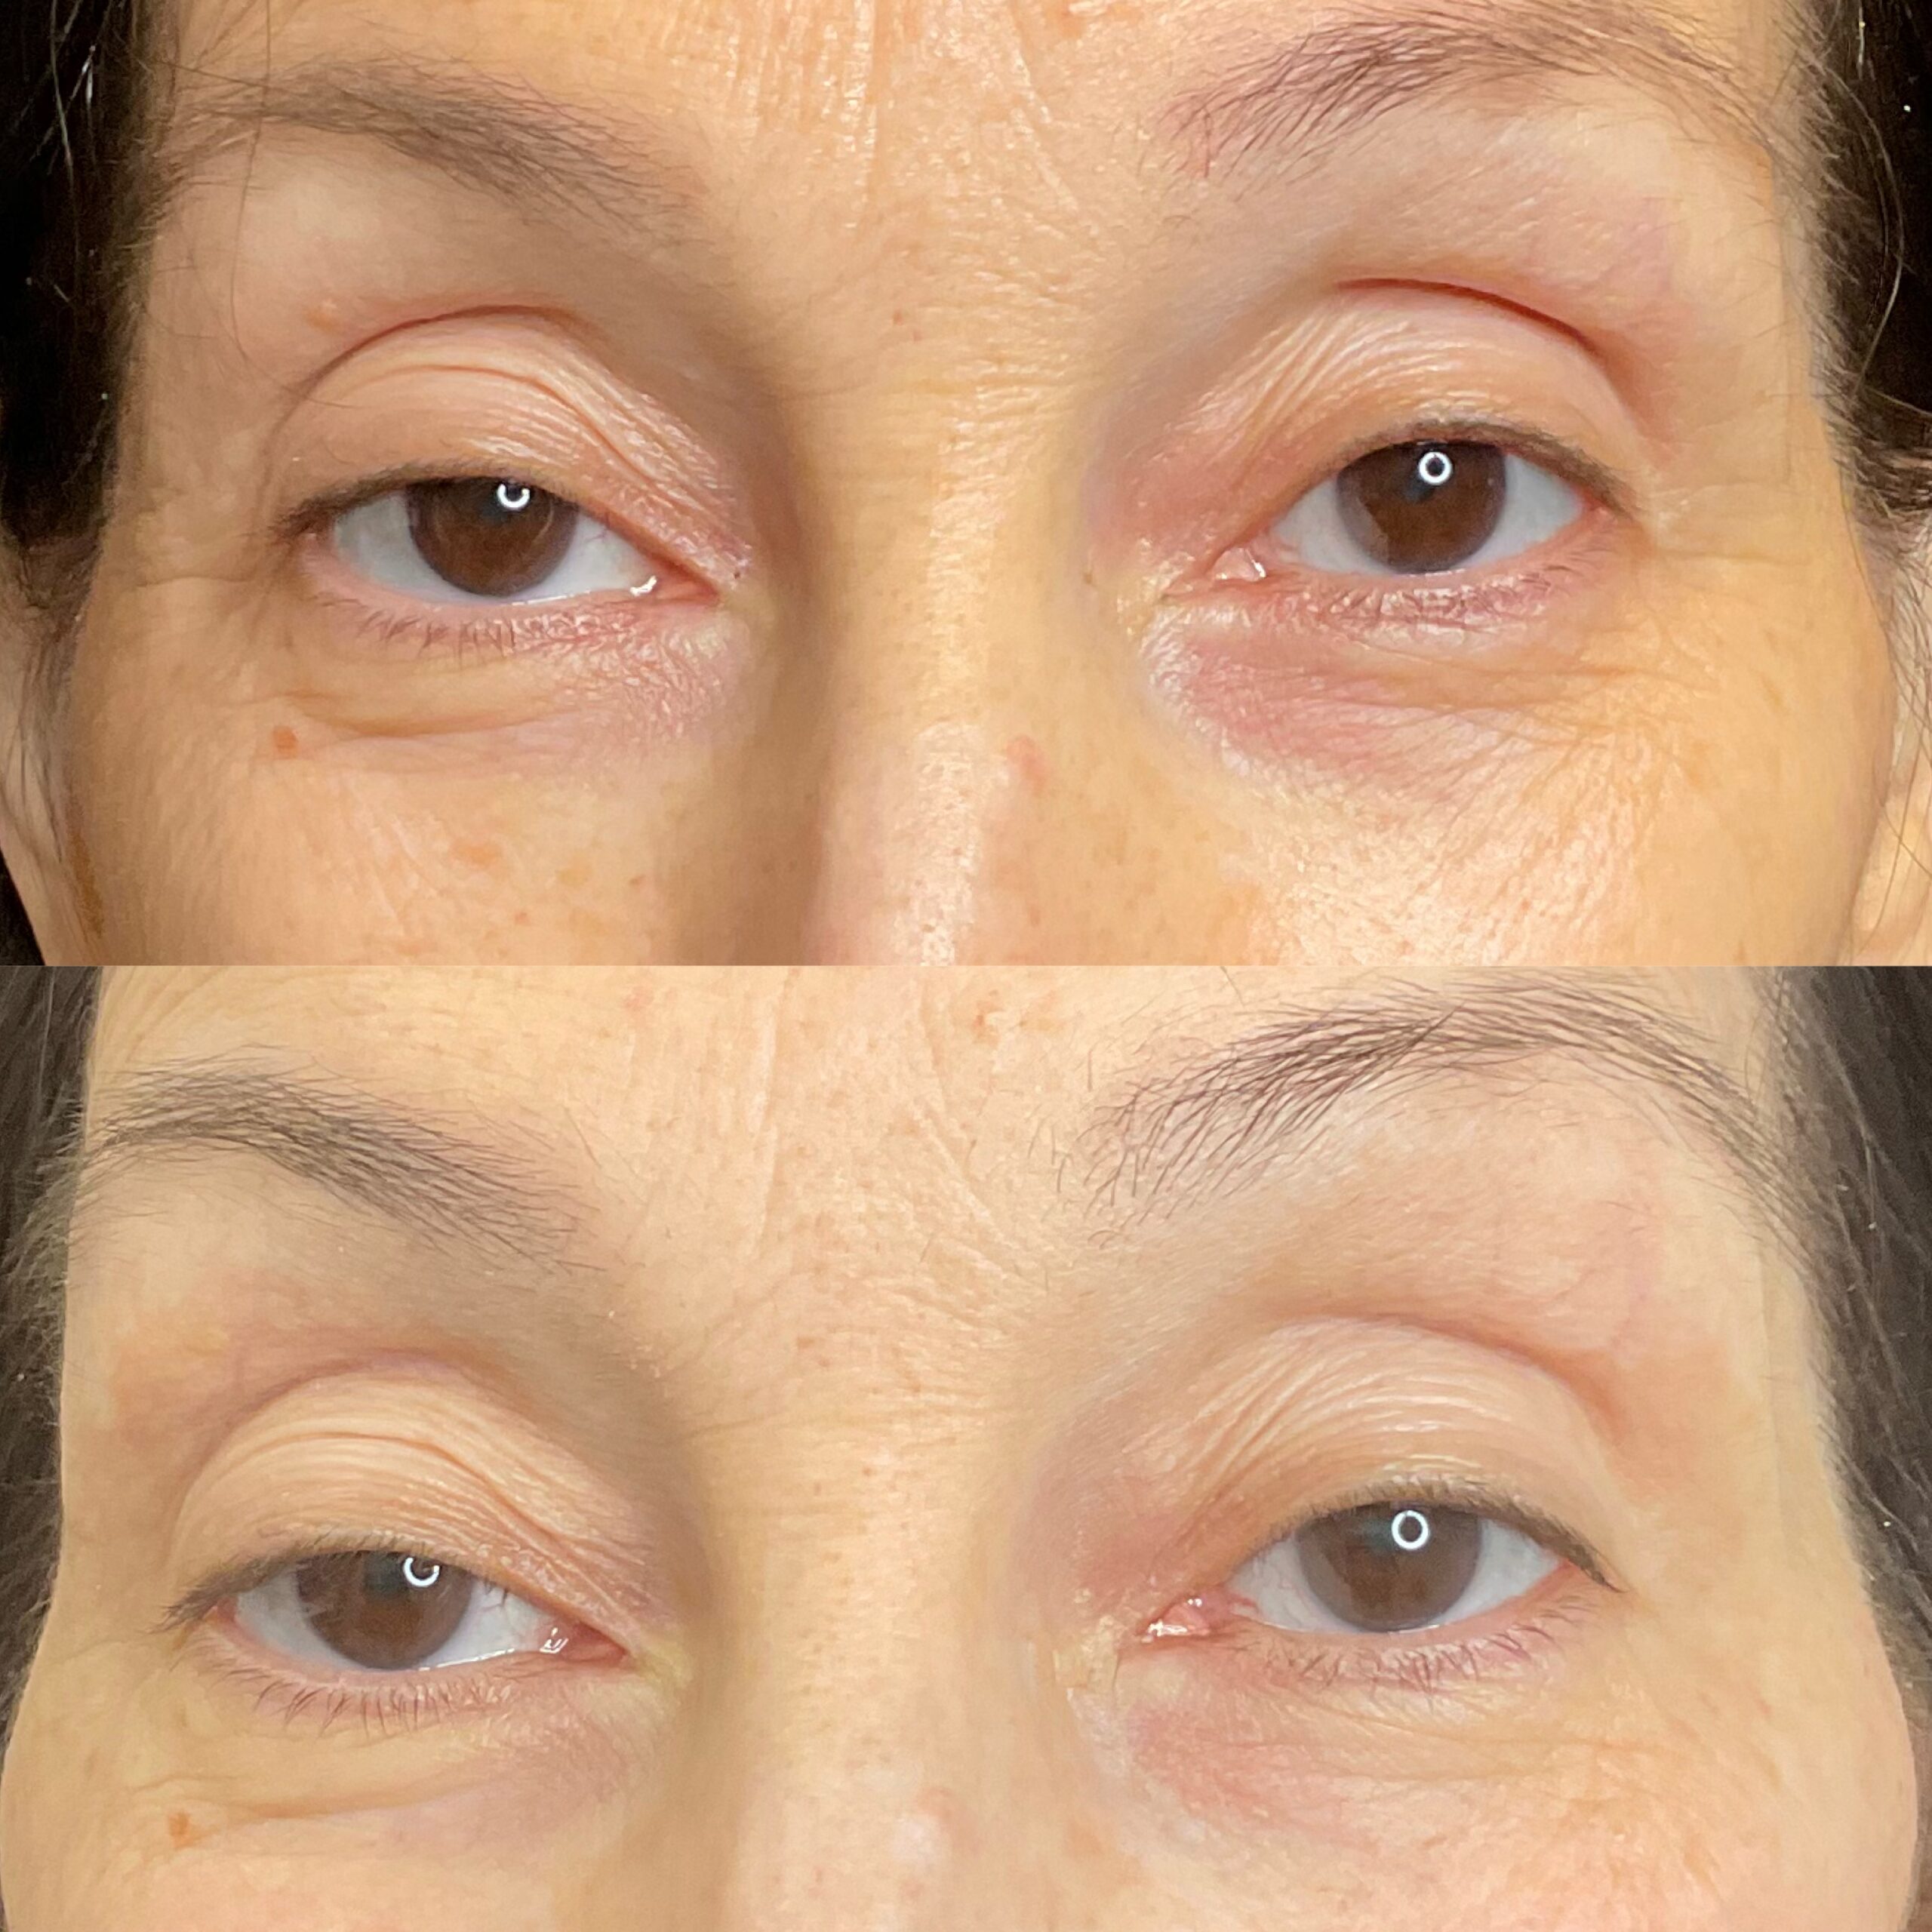 Deka-Eyes-1 treatment